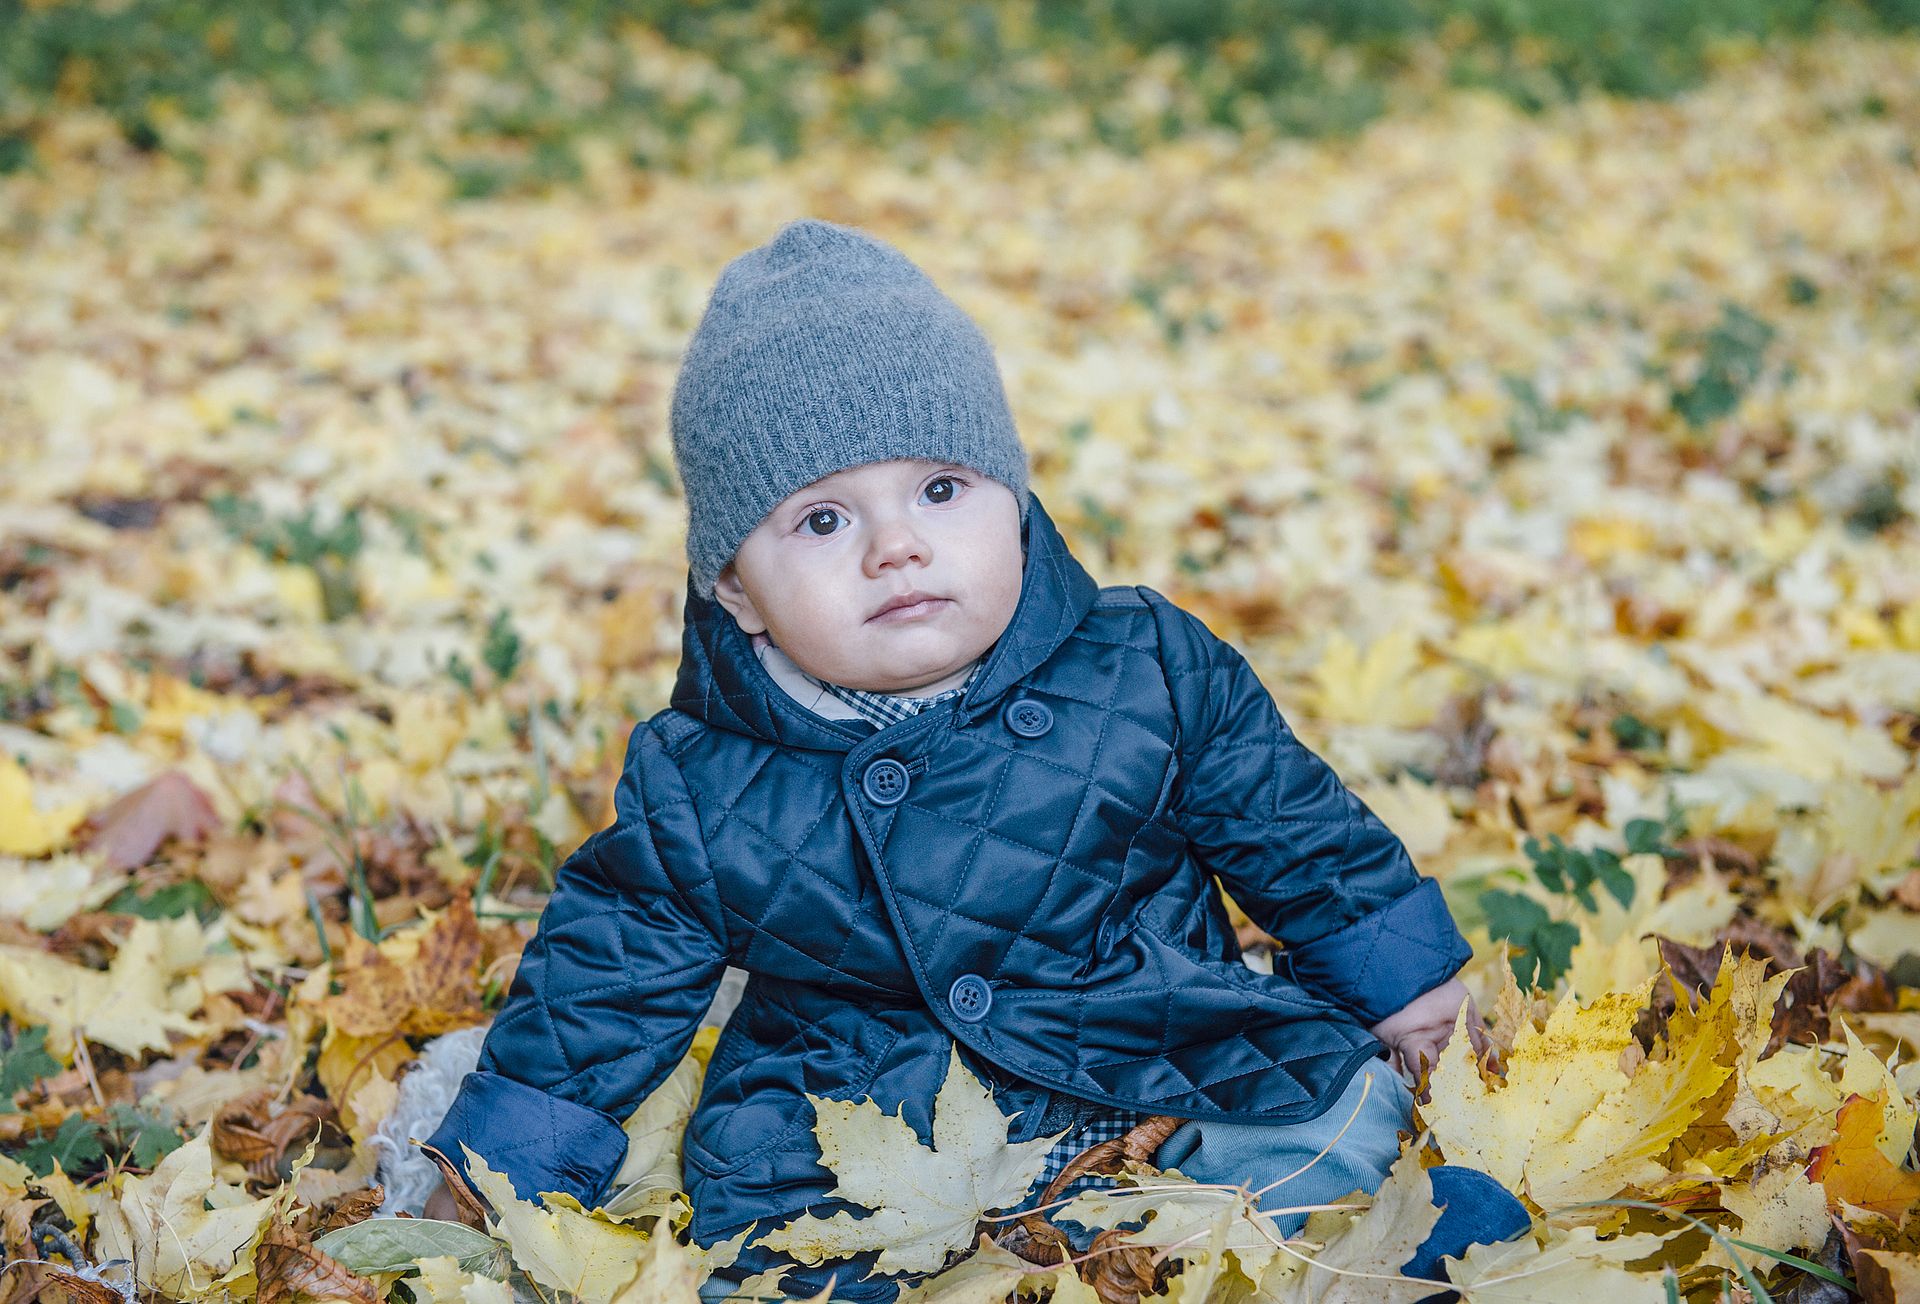 Ongeveer zeven maanden oud en op de bips tussen de herfstbladeren, 2016.